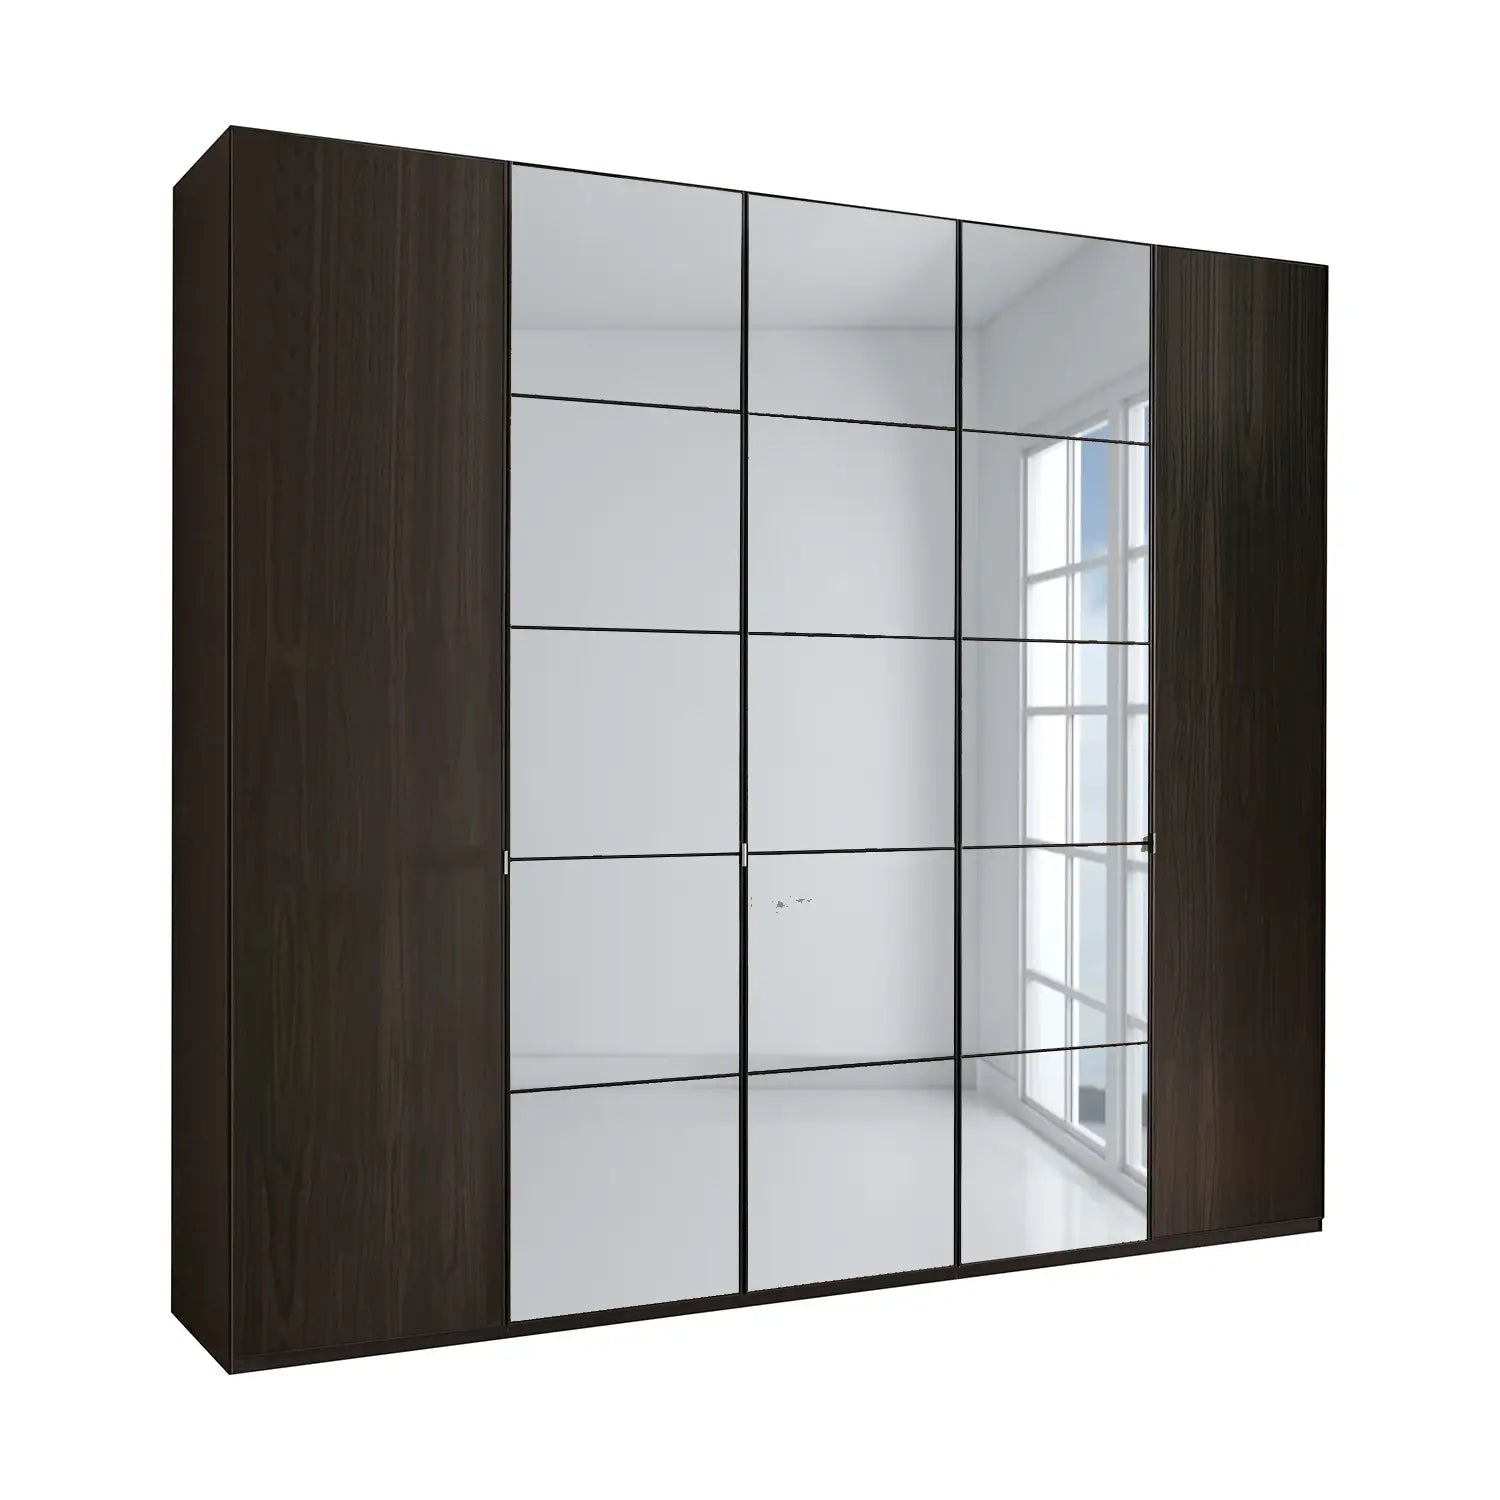 Zenith 250cm 5 Door Hinged Mocca Oak Mirrored Wardrobe